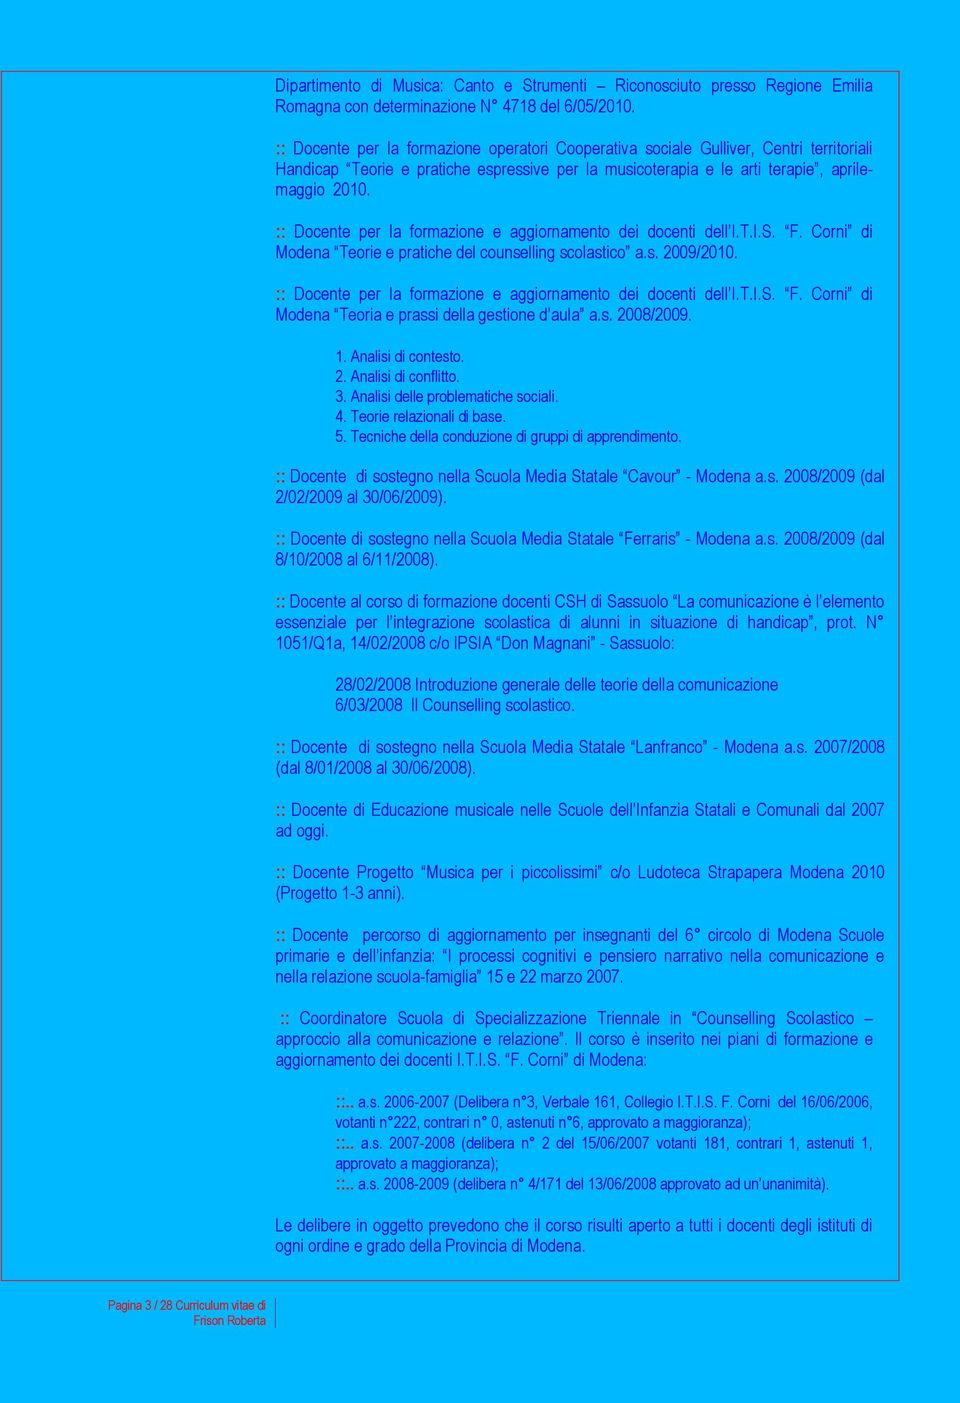 :: Docente per la formazione e aggiornamento dei docenti dell I.T.I.S. F. Corni di Modena Teorie e pratiche del counselling scolastico a.s. 2009/2010.